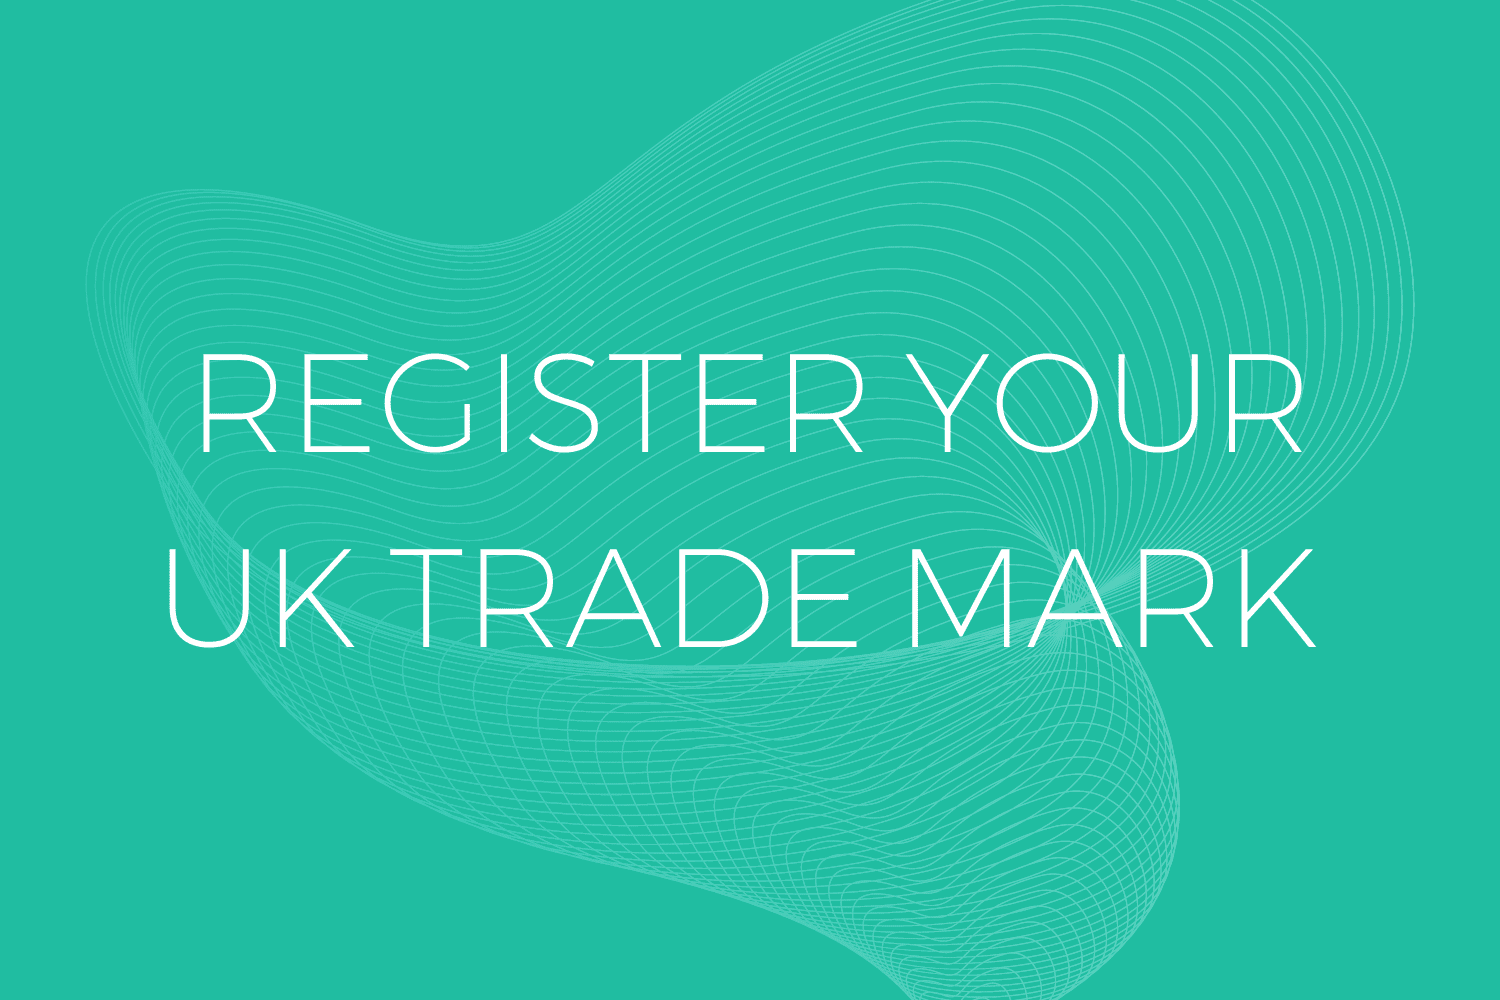 UK Trade mark registration